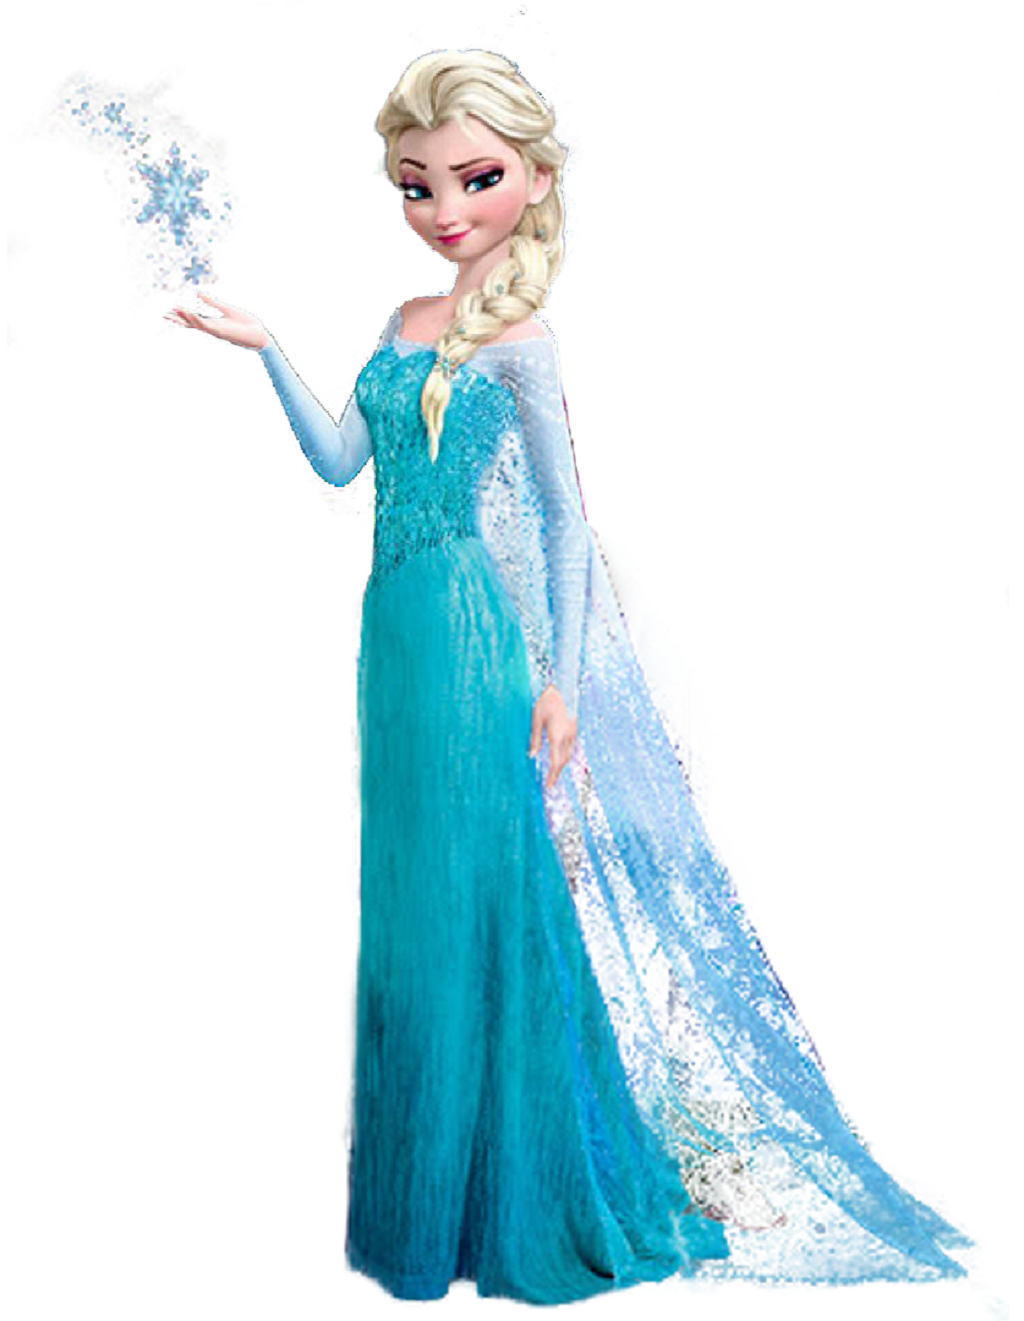 Free download Elsa in Frozen Wallpaper Best Wallpaper FanDownload [1024x1321] for your Desktop, Mobile & Tablet. Explore Frozen Elsa Wallpaper. Frozen Wallpaper, Queen Elsa Wallpaper, Disney Frozen Elsa Wallpaper